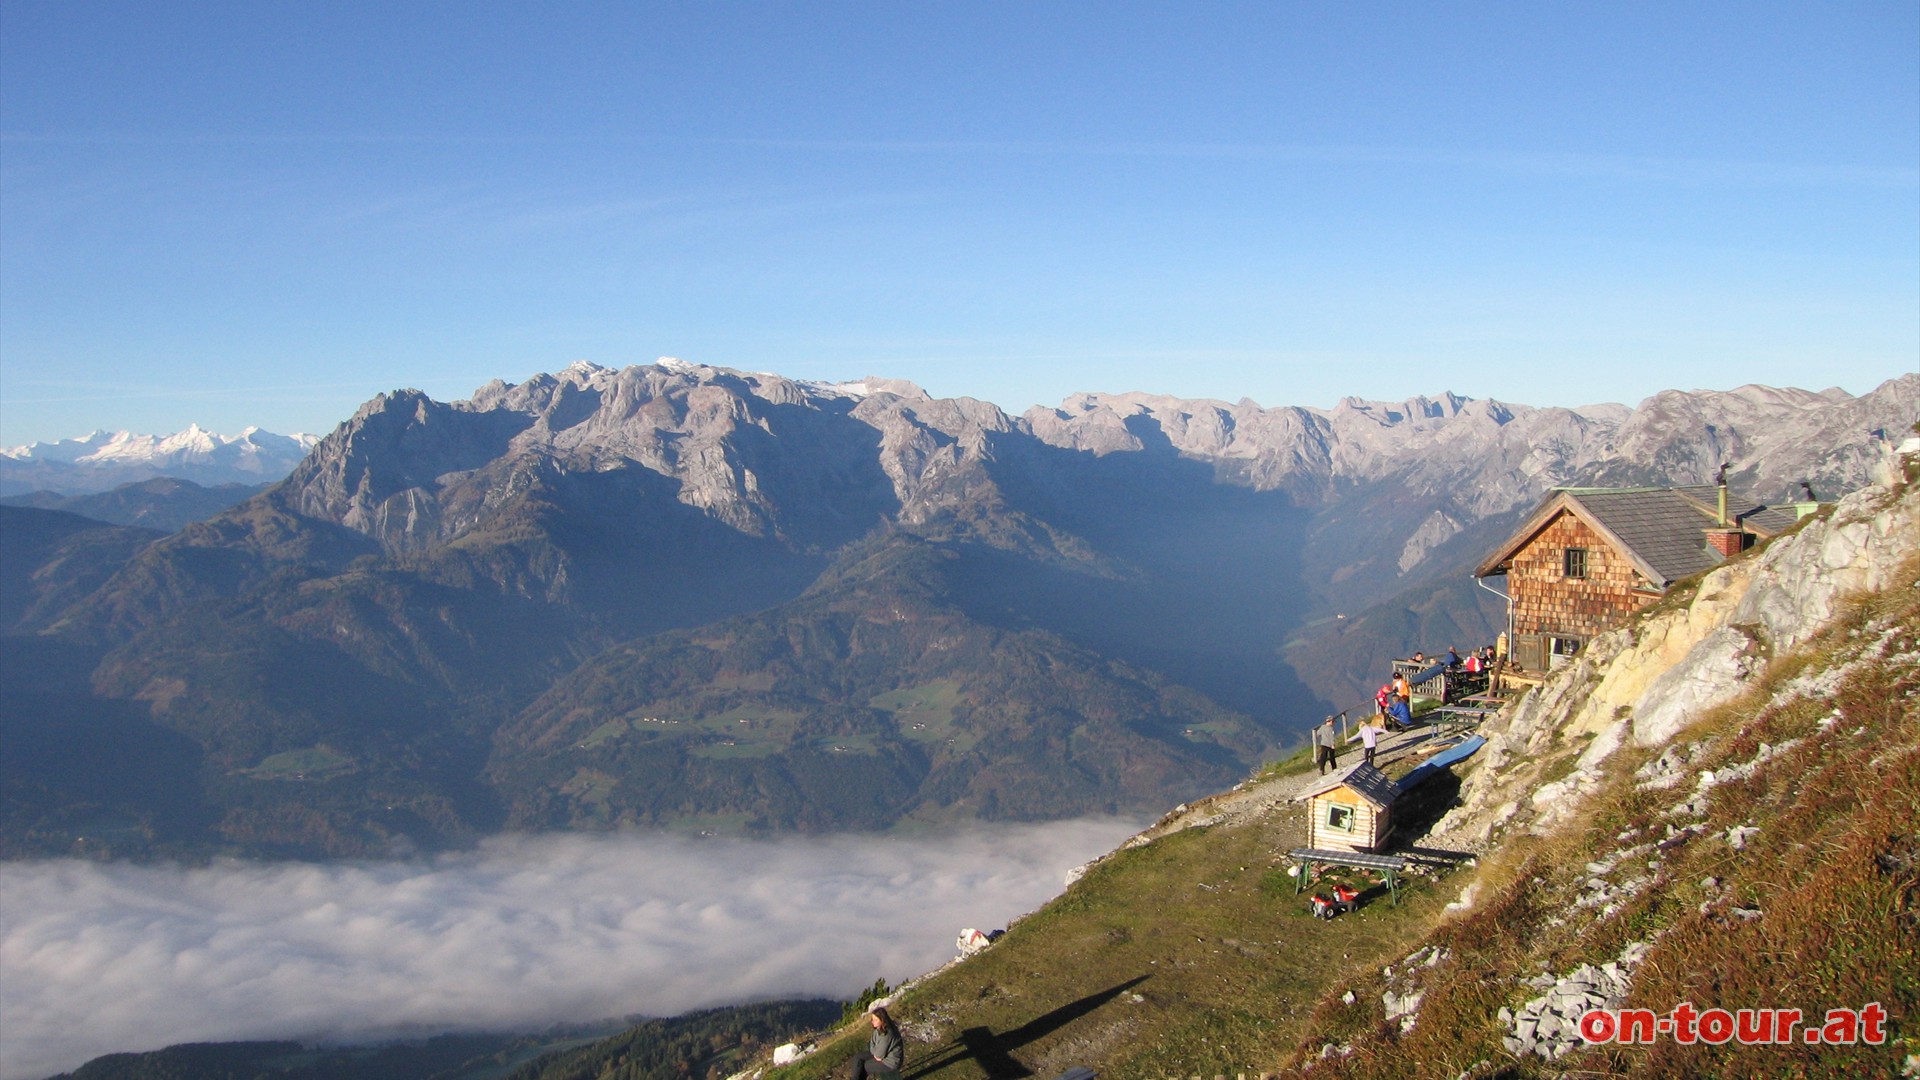 Der frhmorgendliche Panoramablick von der Werfener Htte aus gehrt sicherlich zu den eindrucksvollsten Ausblicken des Tennengebirges.